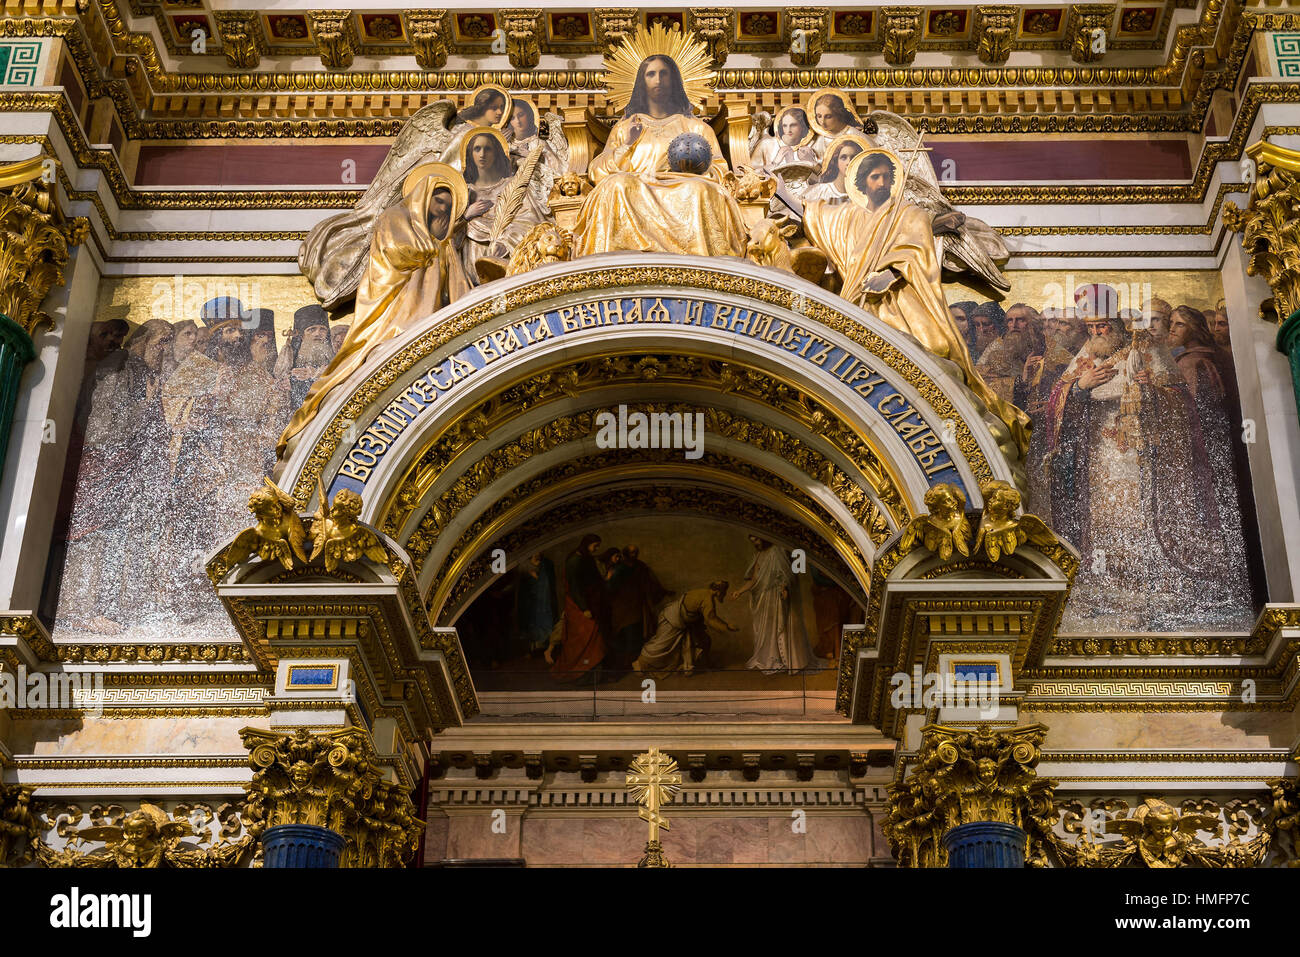 SAINT PETERSBURG, Russie - le 10 septembre 2013. À l'intérieur de la Cathédrale Saint Isaac absolument décorées de peintures et de bas-reliefs , la Russie. Banque D'Images